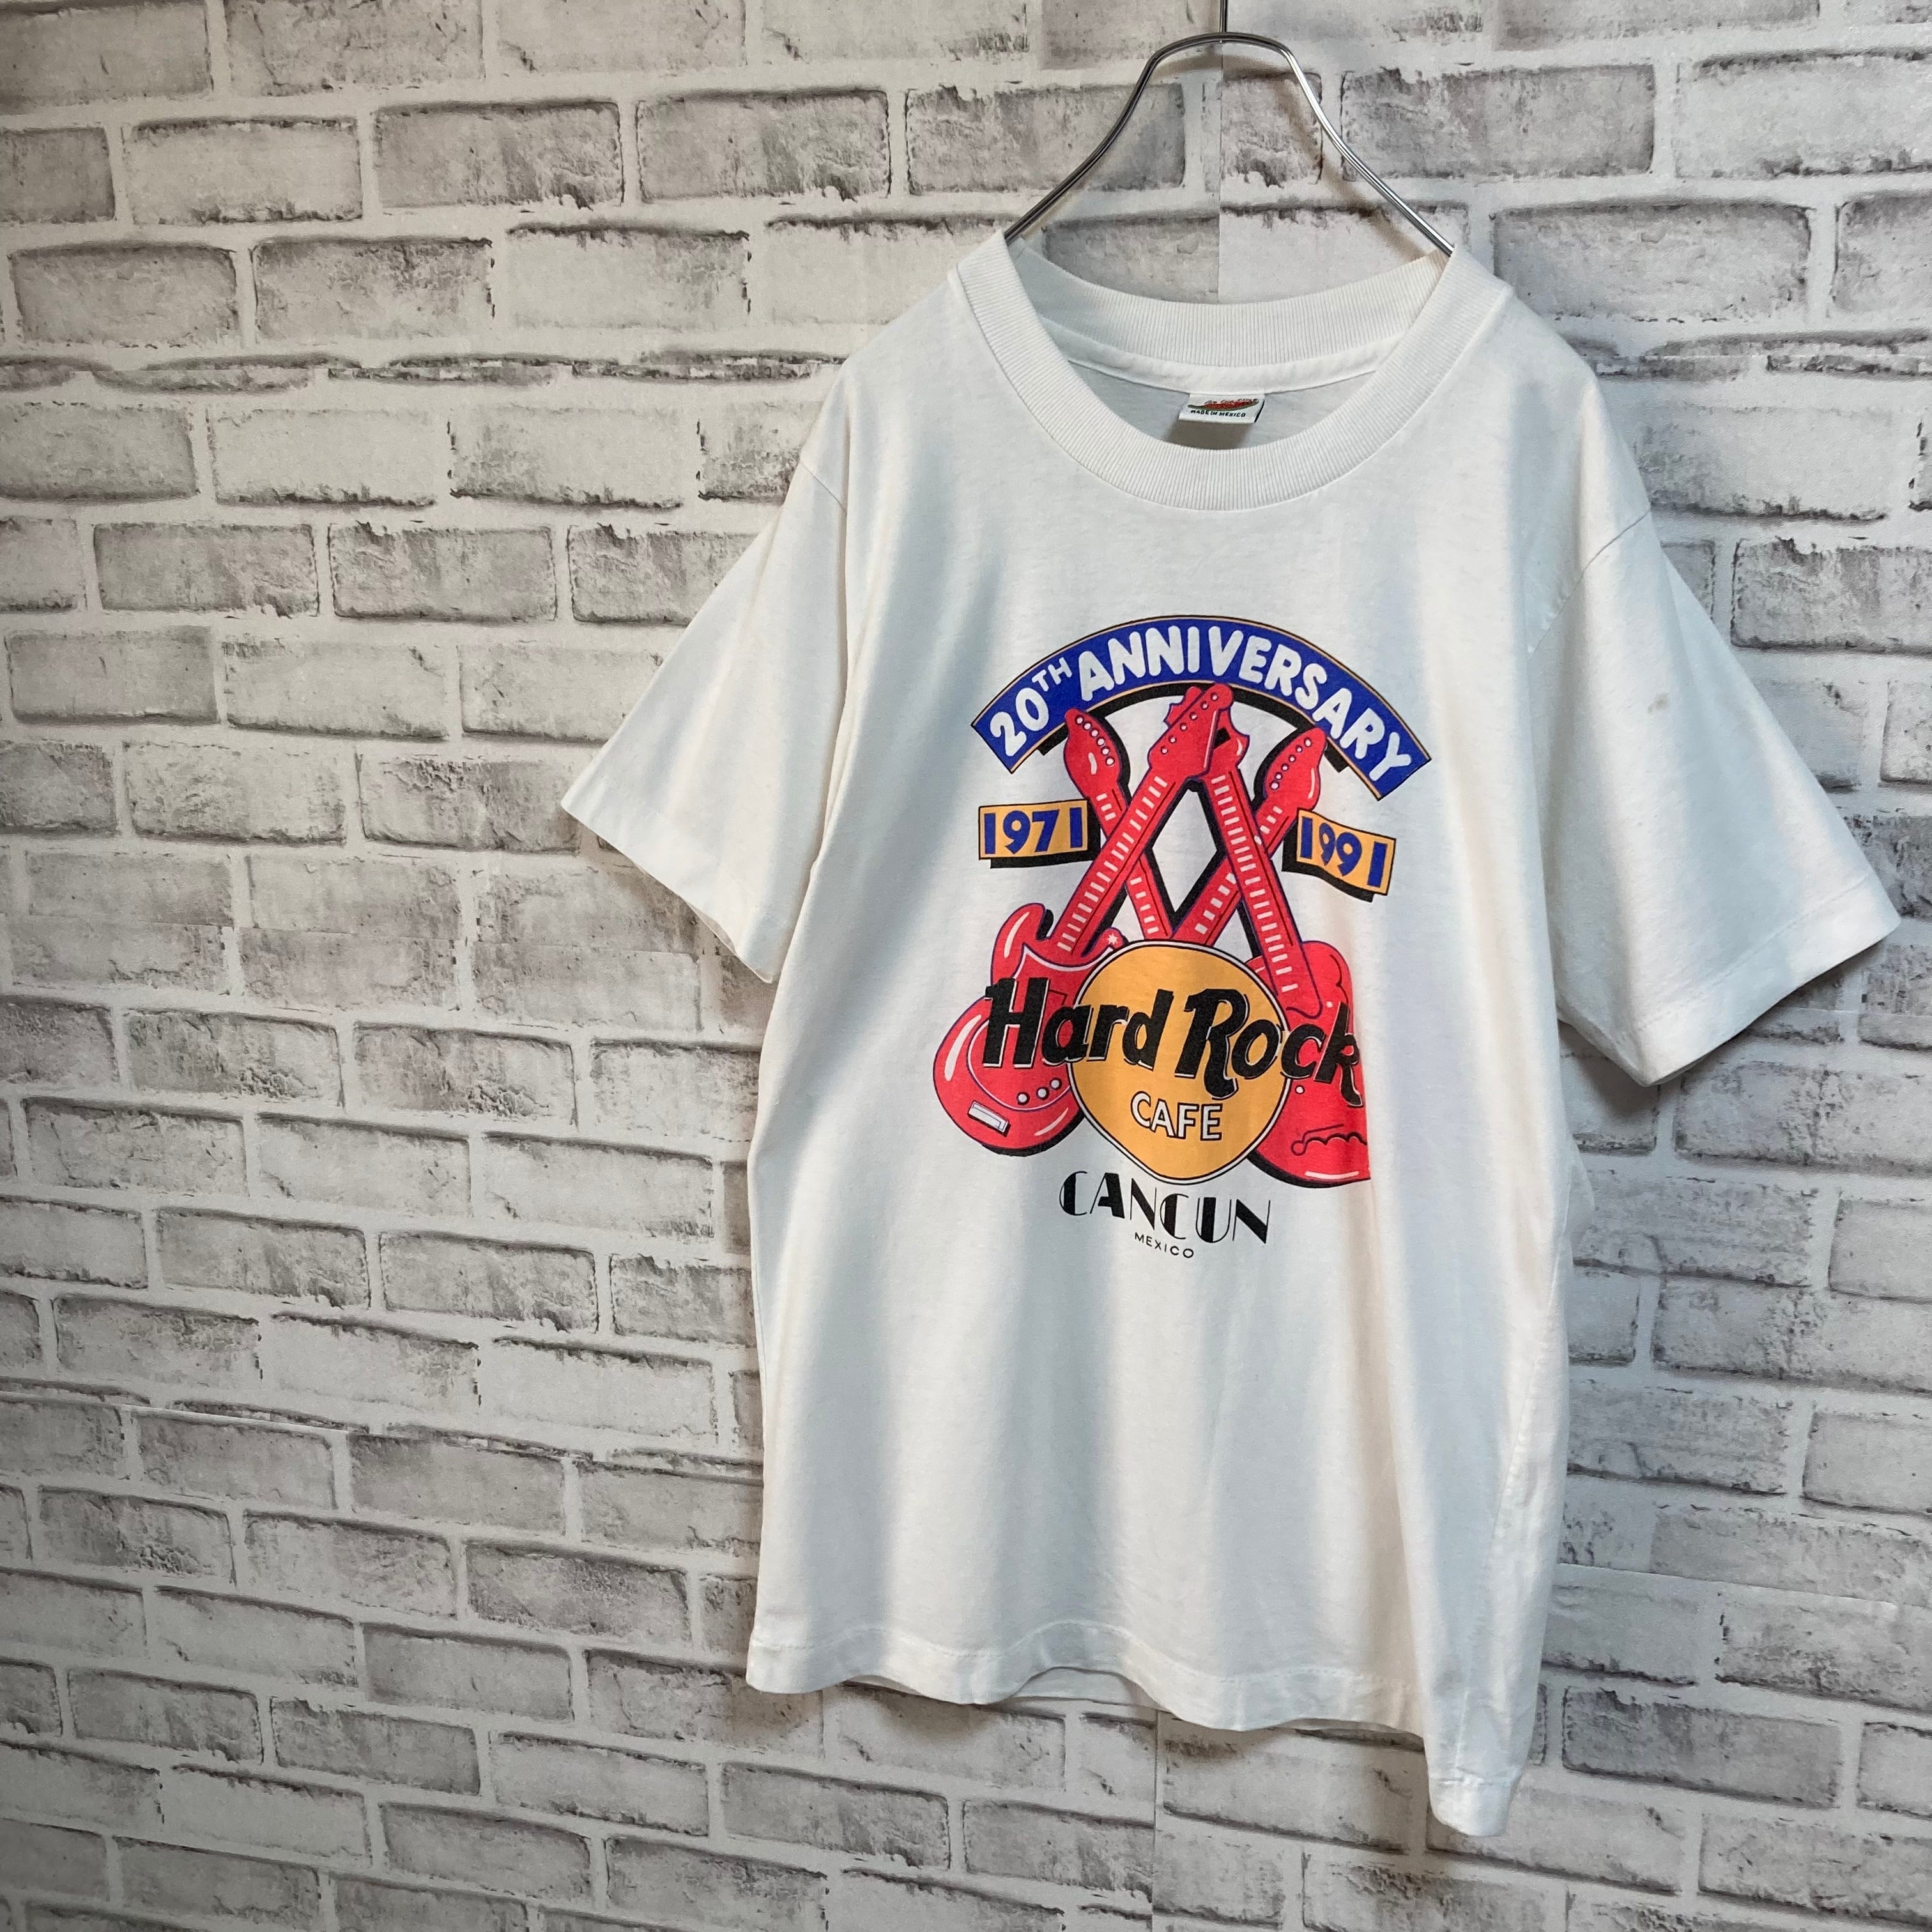 Com Cum shine】S/S Tee L 90s “Hard Rock CAFE” ハードロックカフェ レストラン 企業モノ 企業ロゴ Tシャツ  アメリカ USA 古着 | Fuzzy Fuzzy